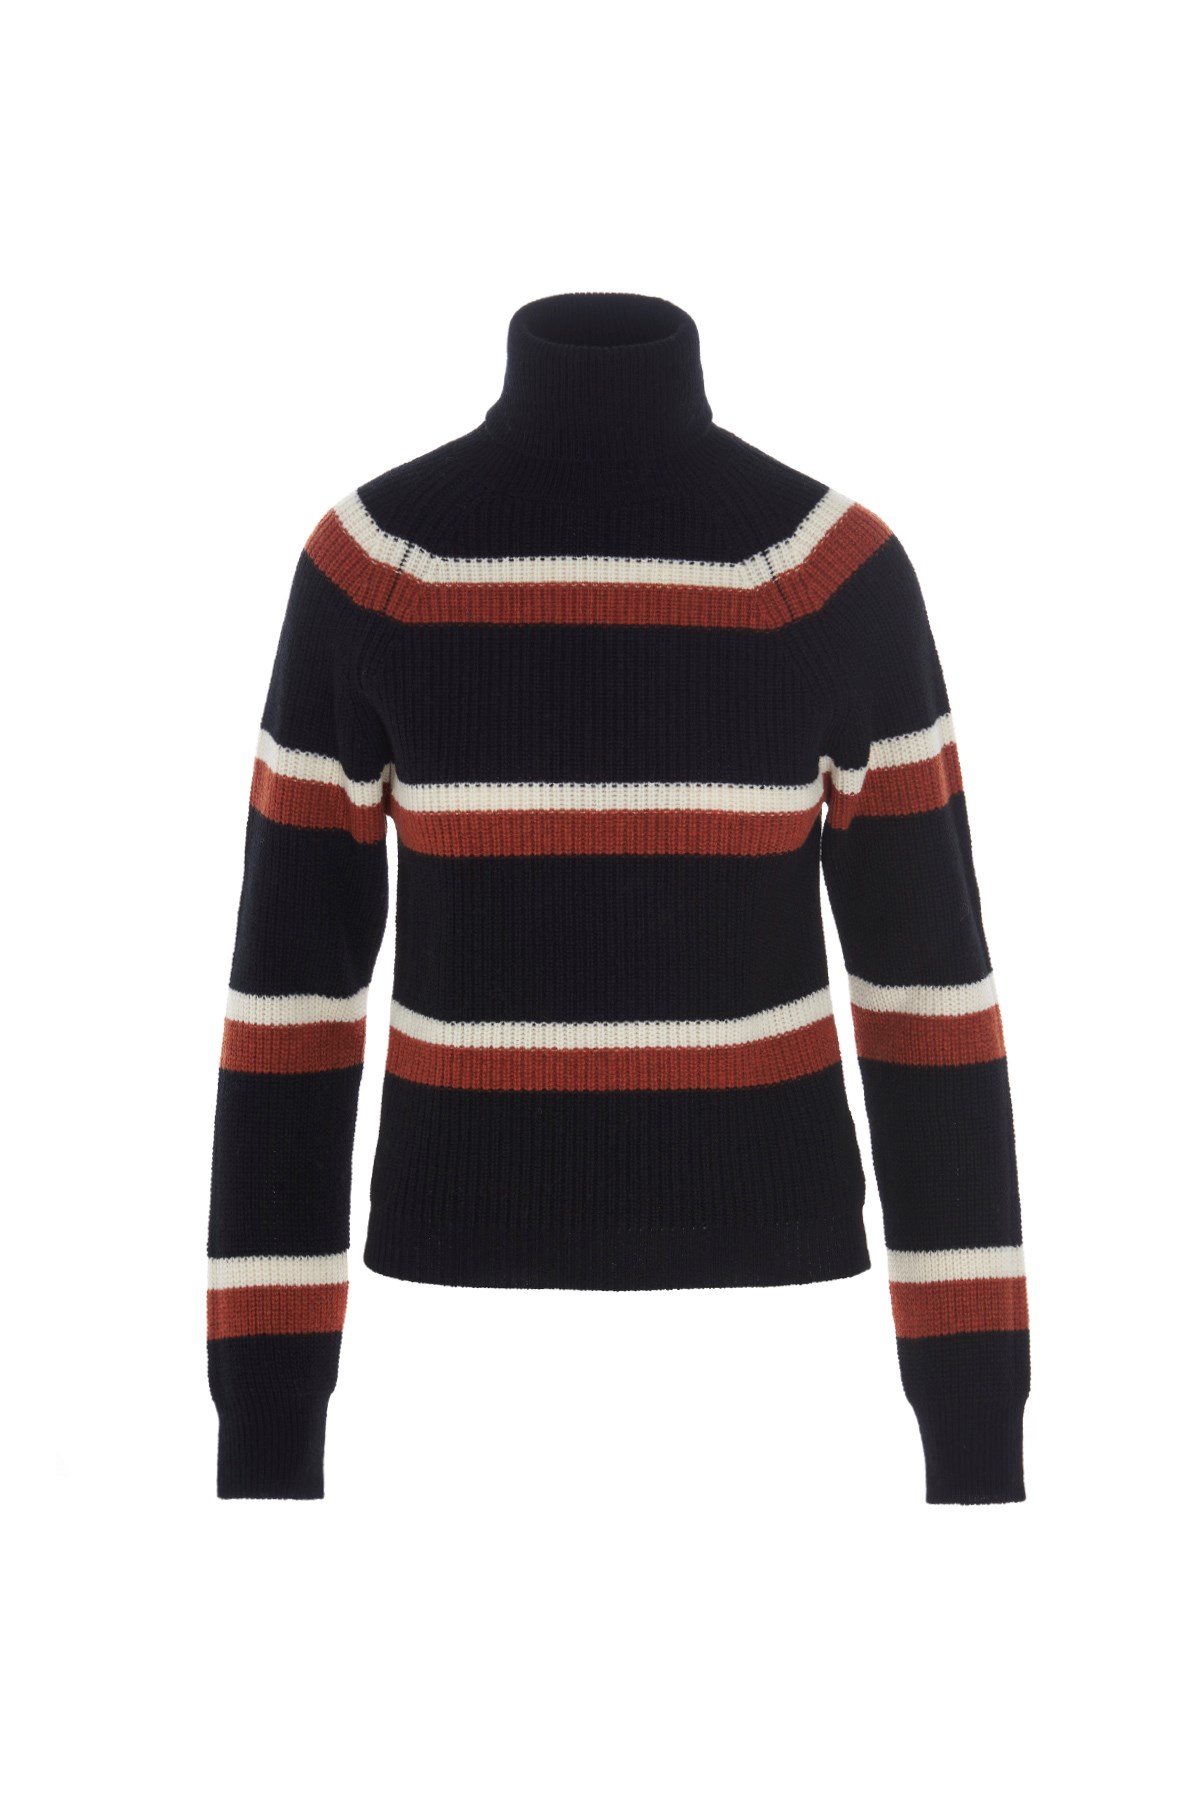 MARNI Striped Wool Turtleneck Sweater